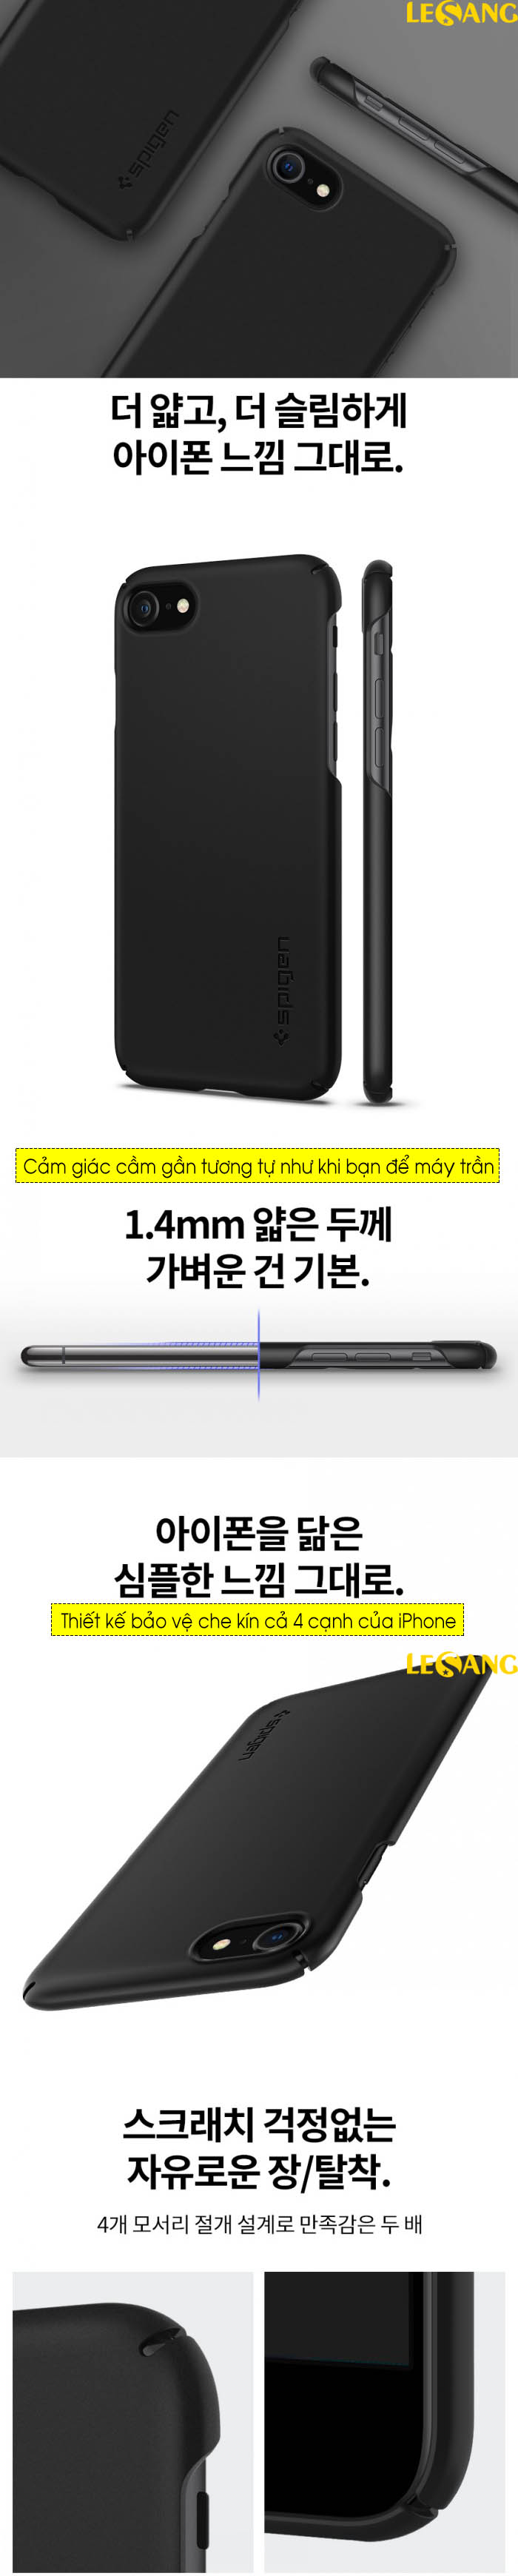 Ốp lưng iPhone SE 2020 / iPhone 8/7 Spigen Thin Fit siêu nhẹ 6